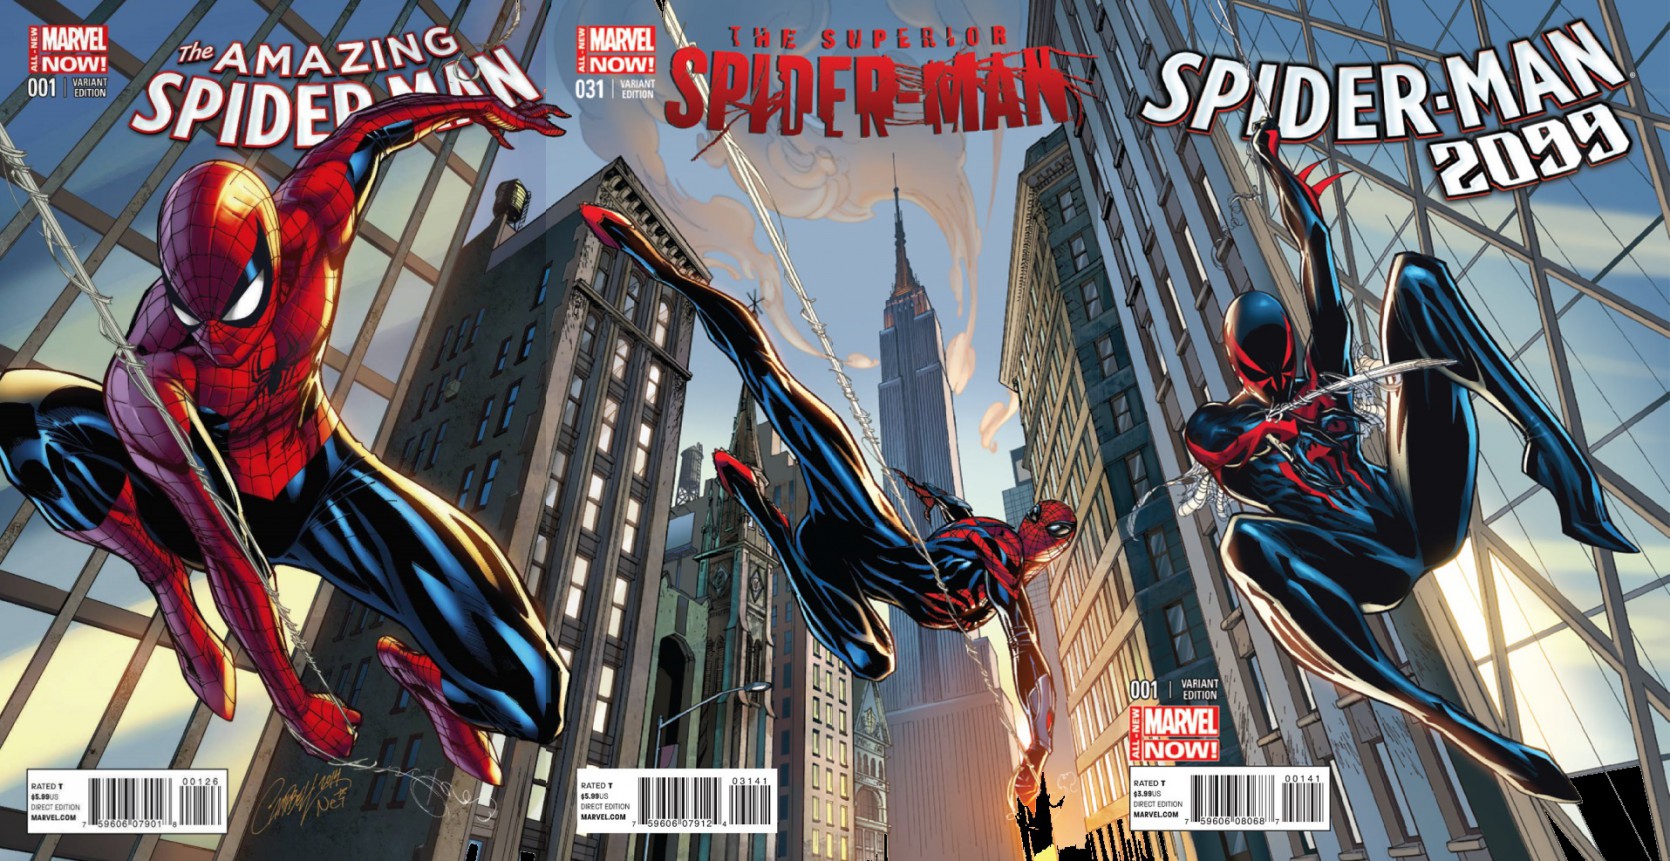 Amazing Spider-Man #1, Superior Spider-Man #31 and Spider-Man 2099